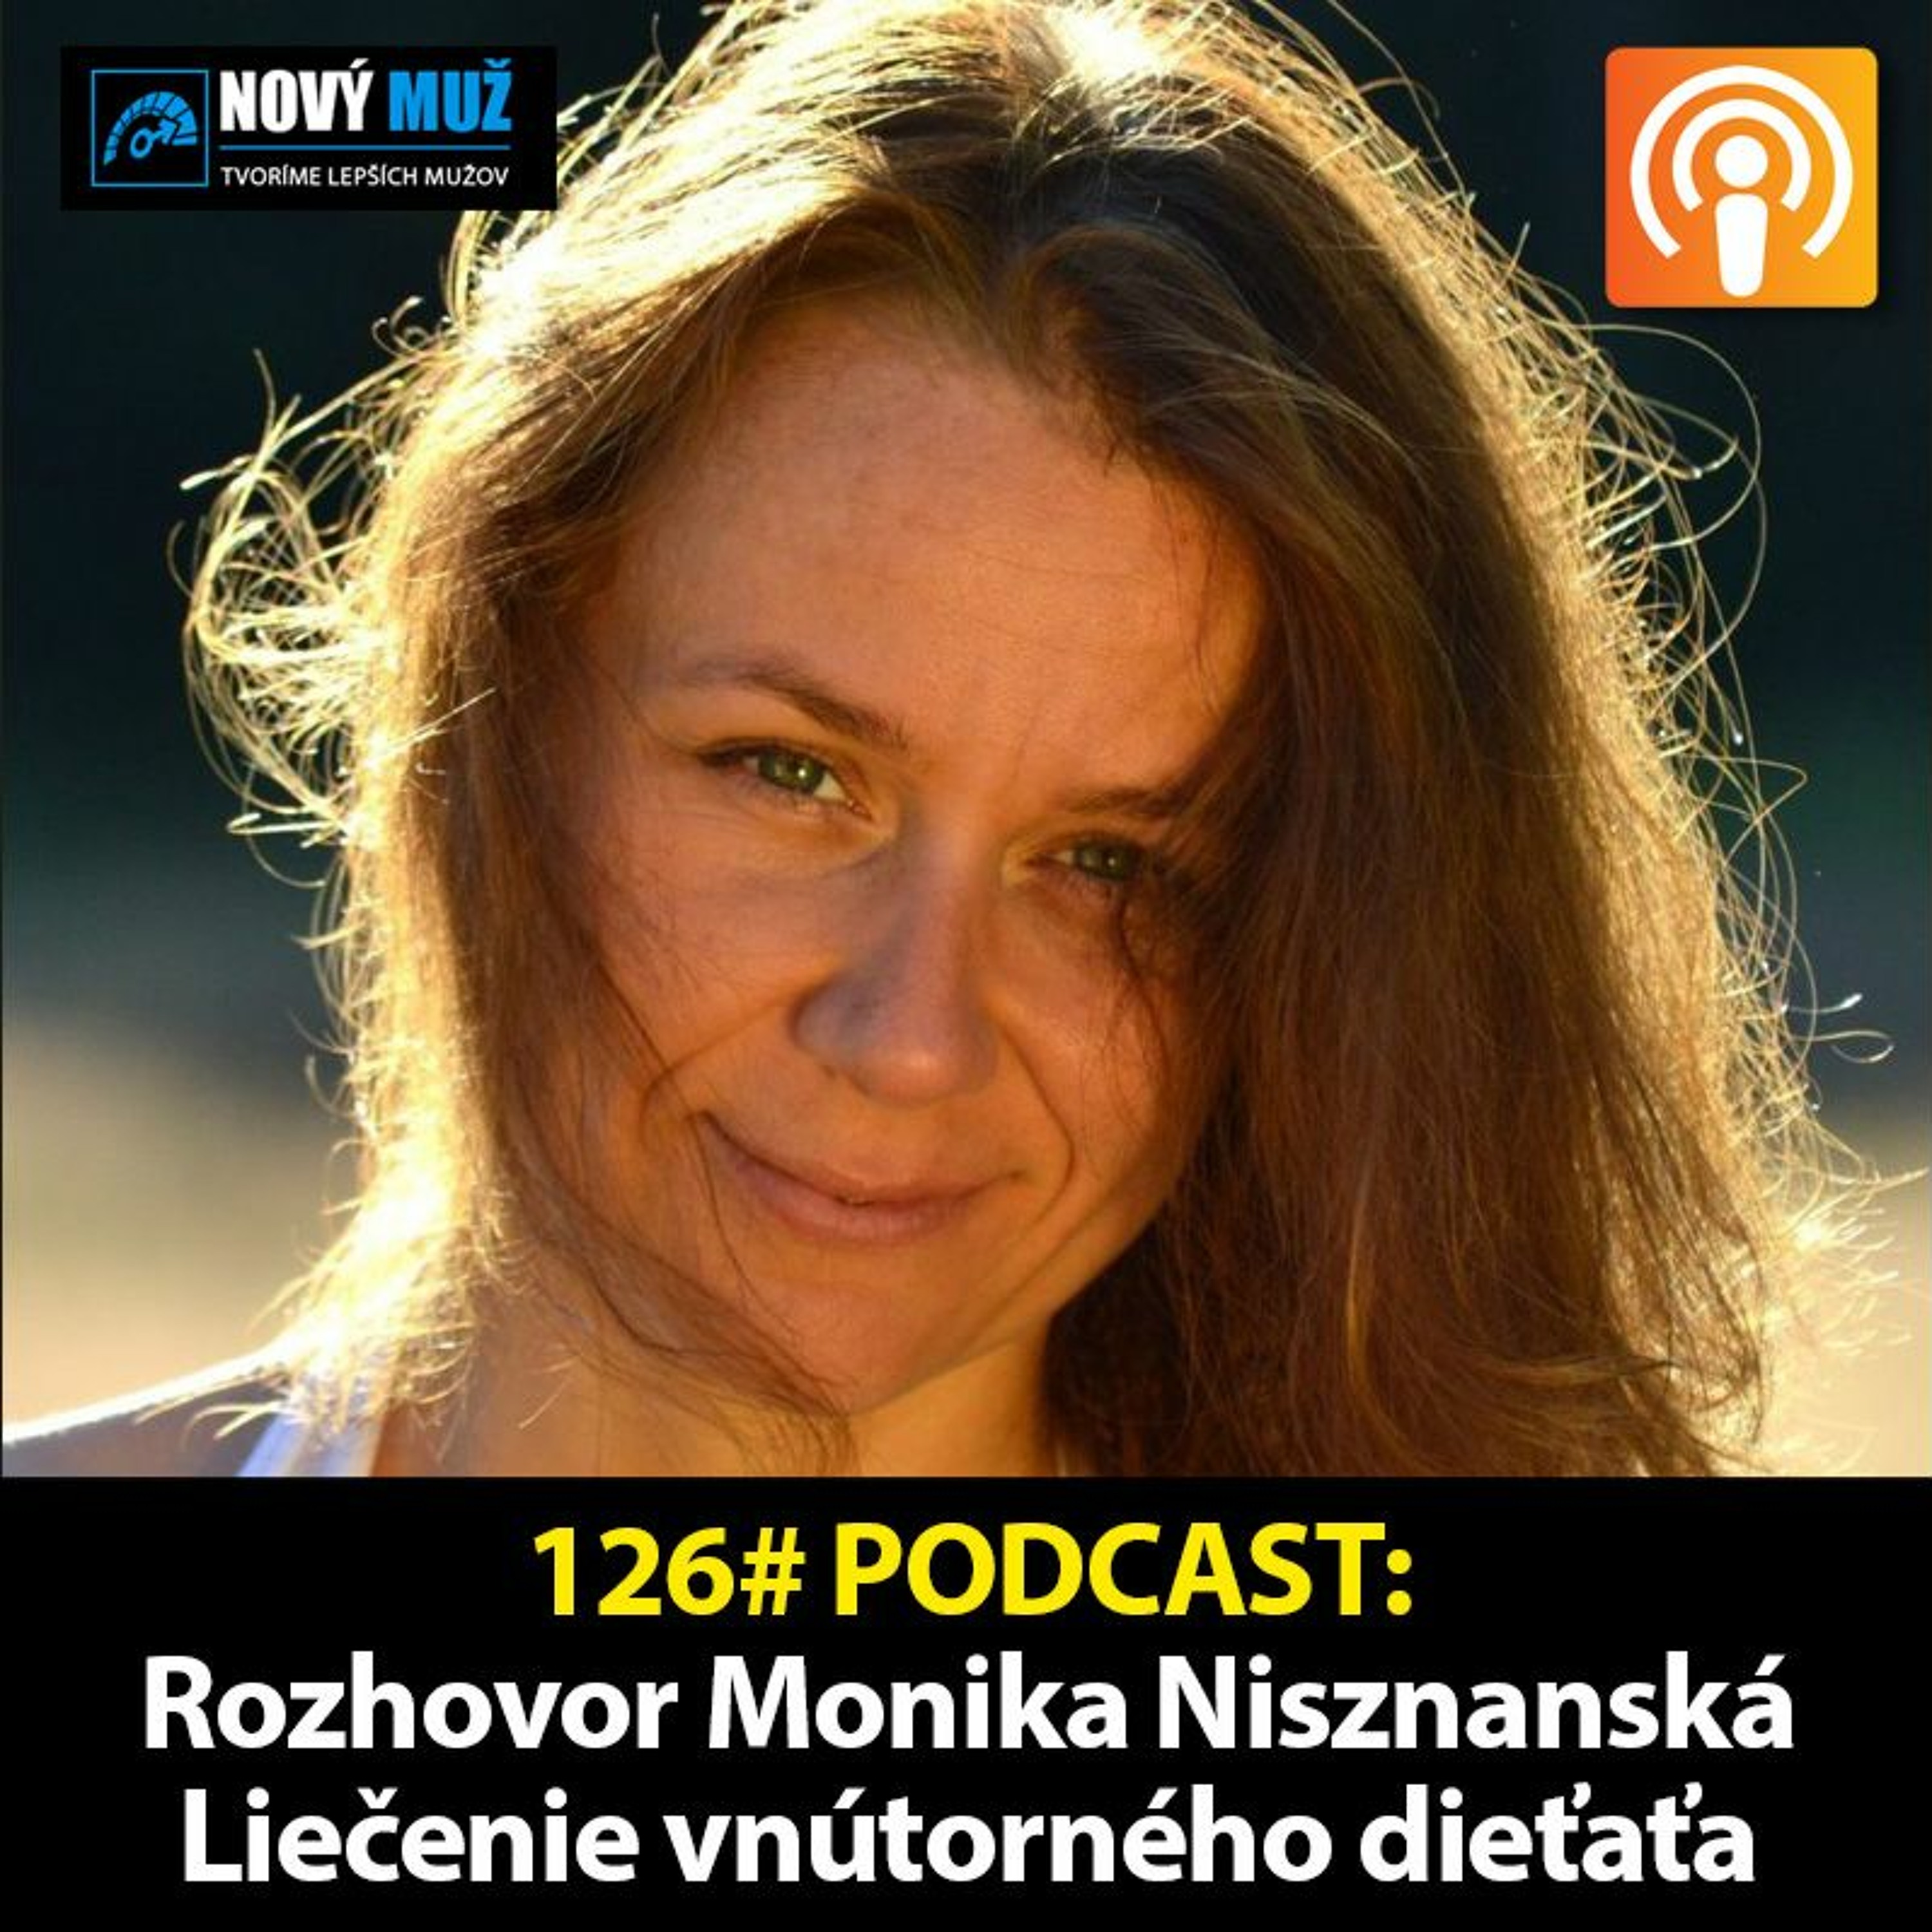 126#PODCAST - Rozhovor Monika Nisznanská - Liečenie vnútorného dieťaťa